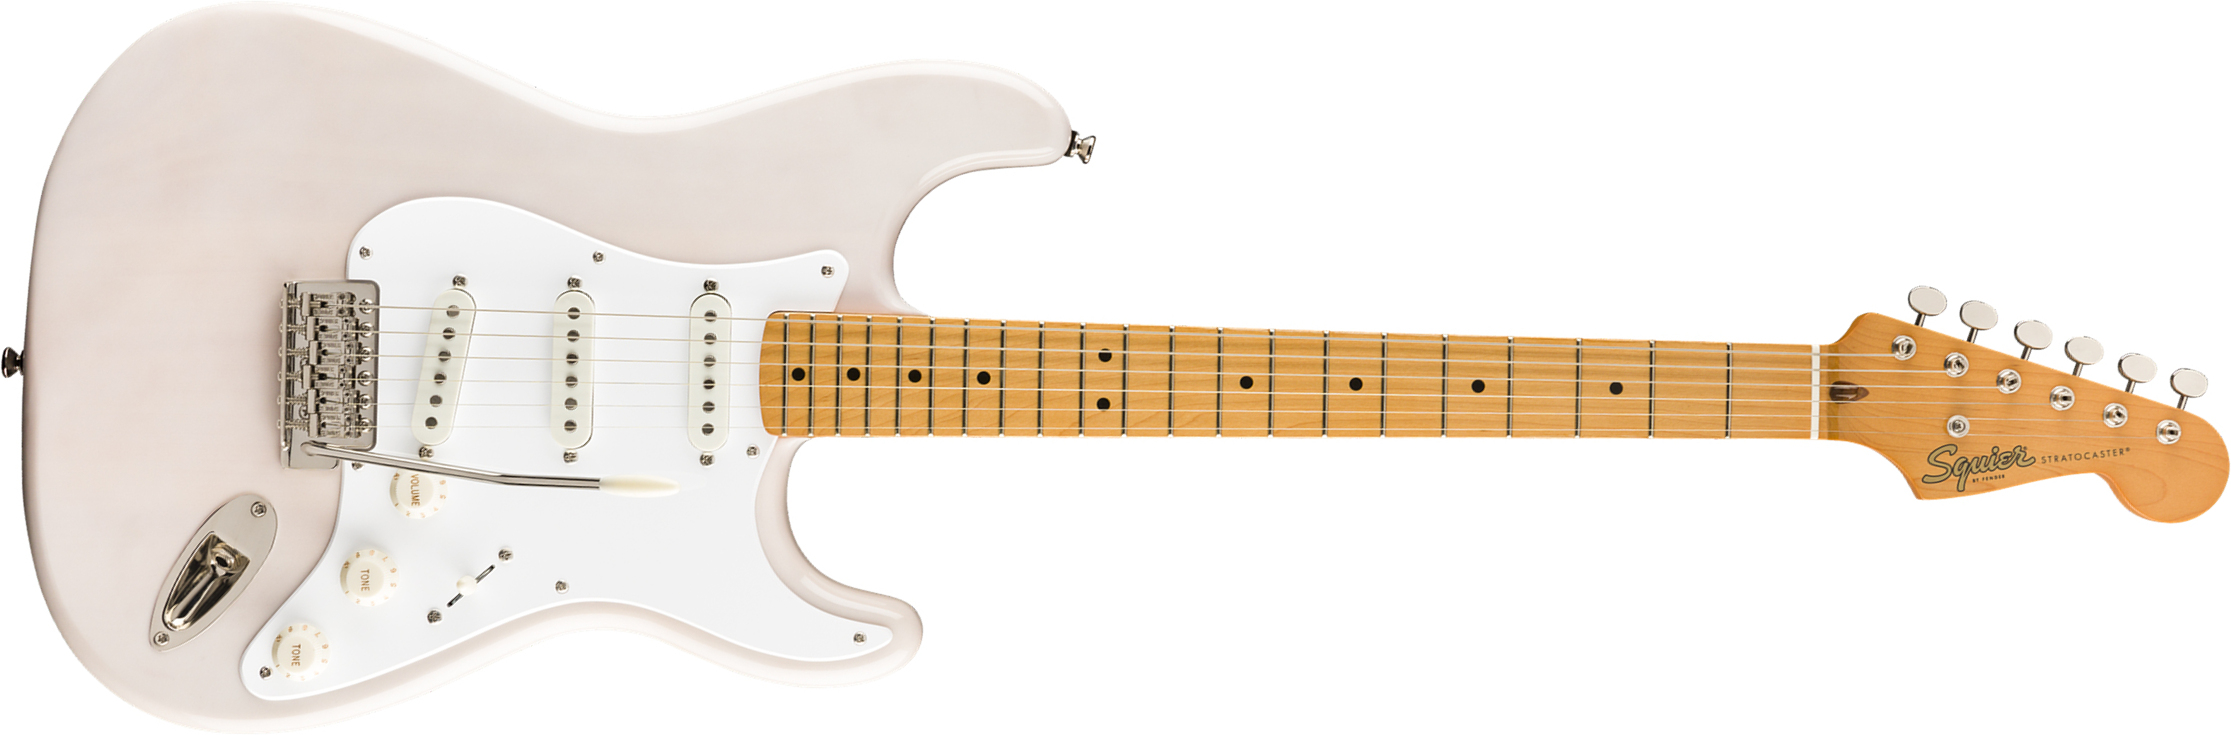 Squier Strat '50s Classic Vibe 2019 Mn 2019 - White Blonde - Elektrische gitaar in Str-vorm - Main picture